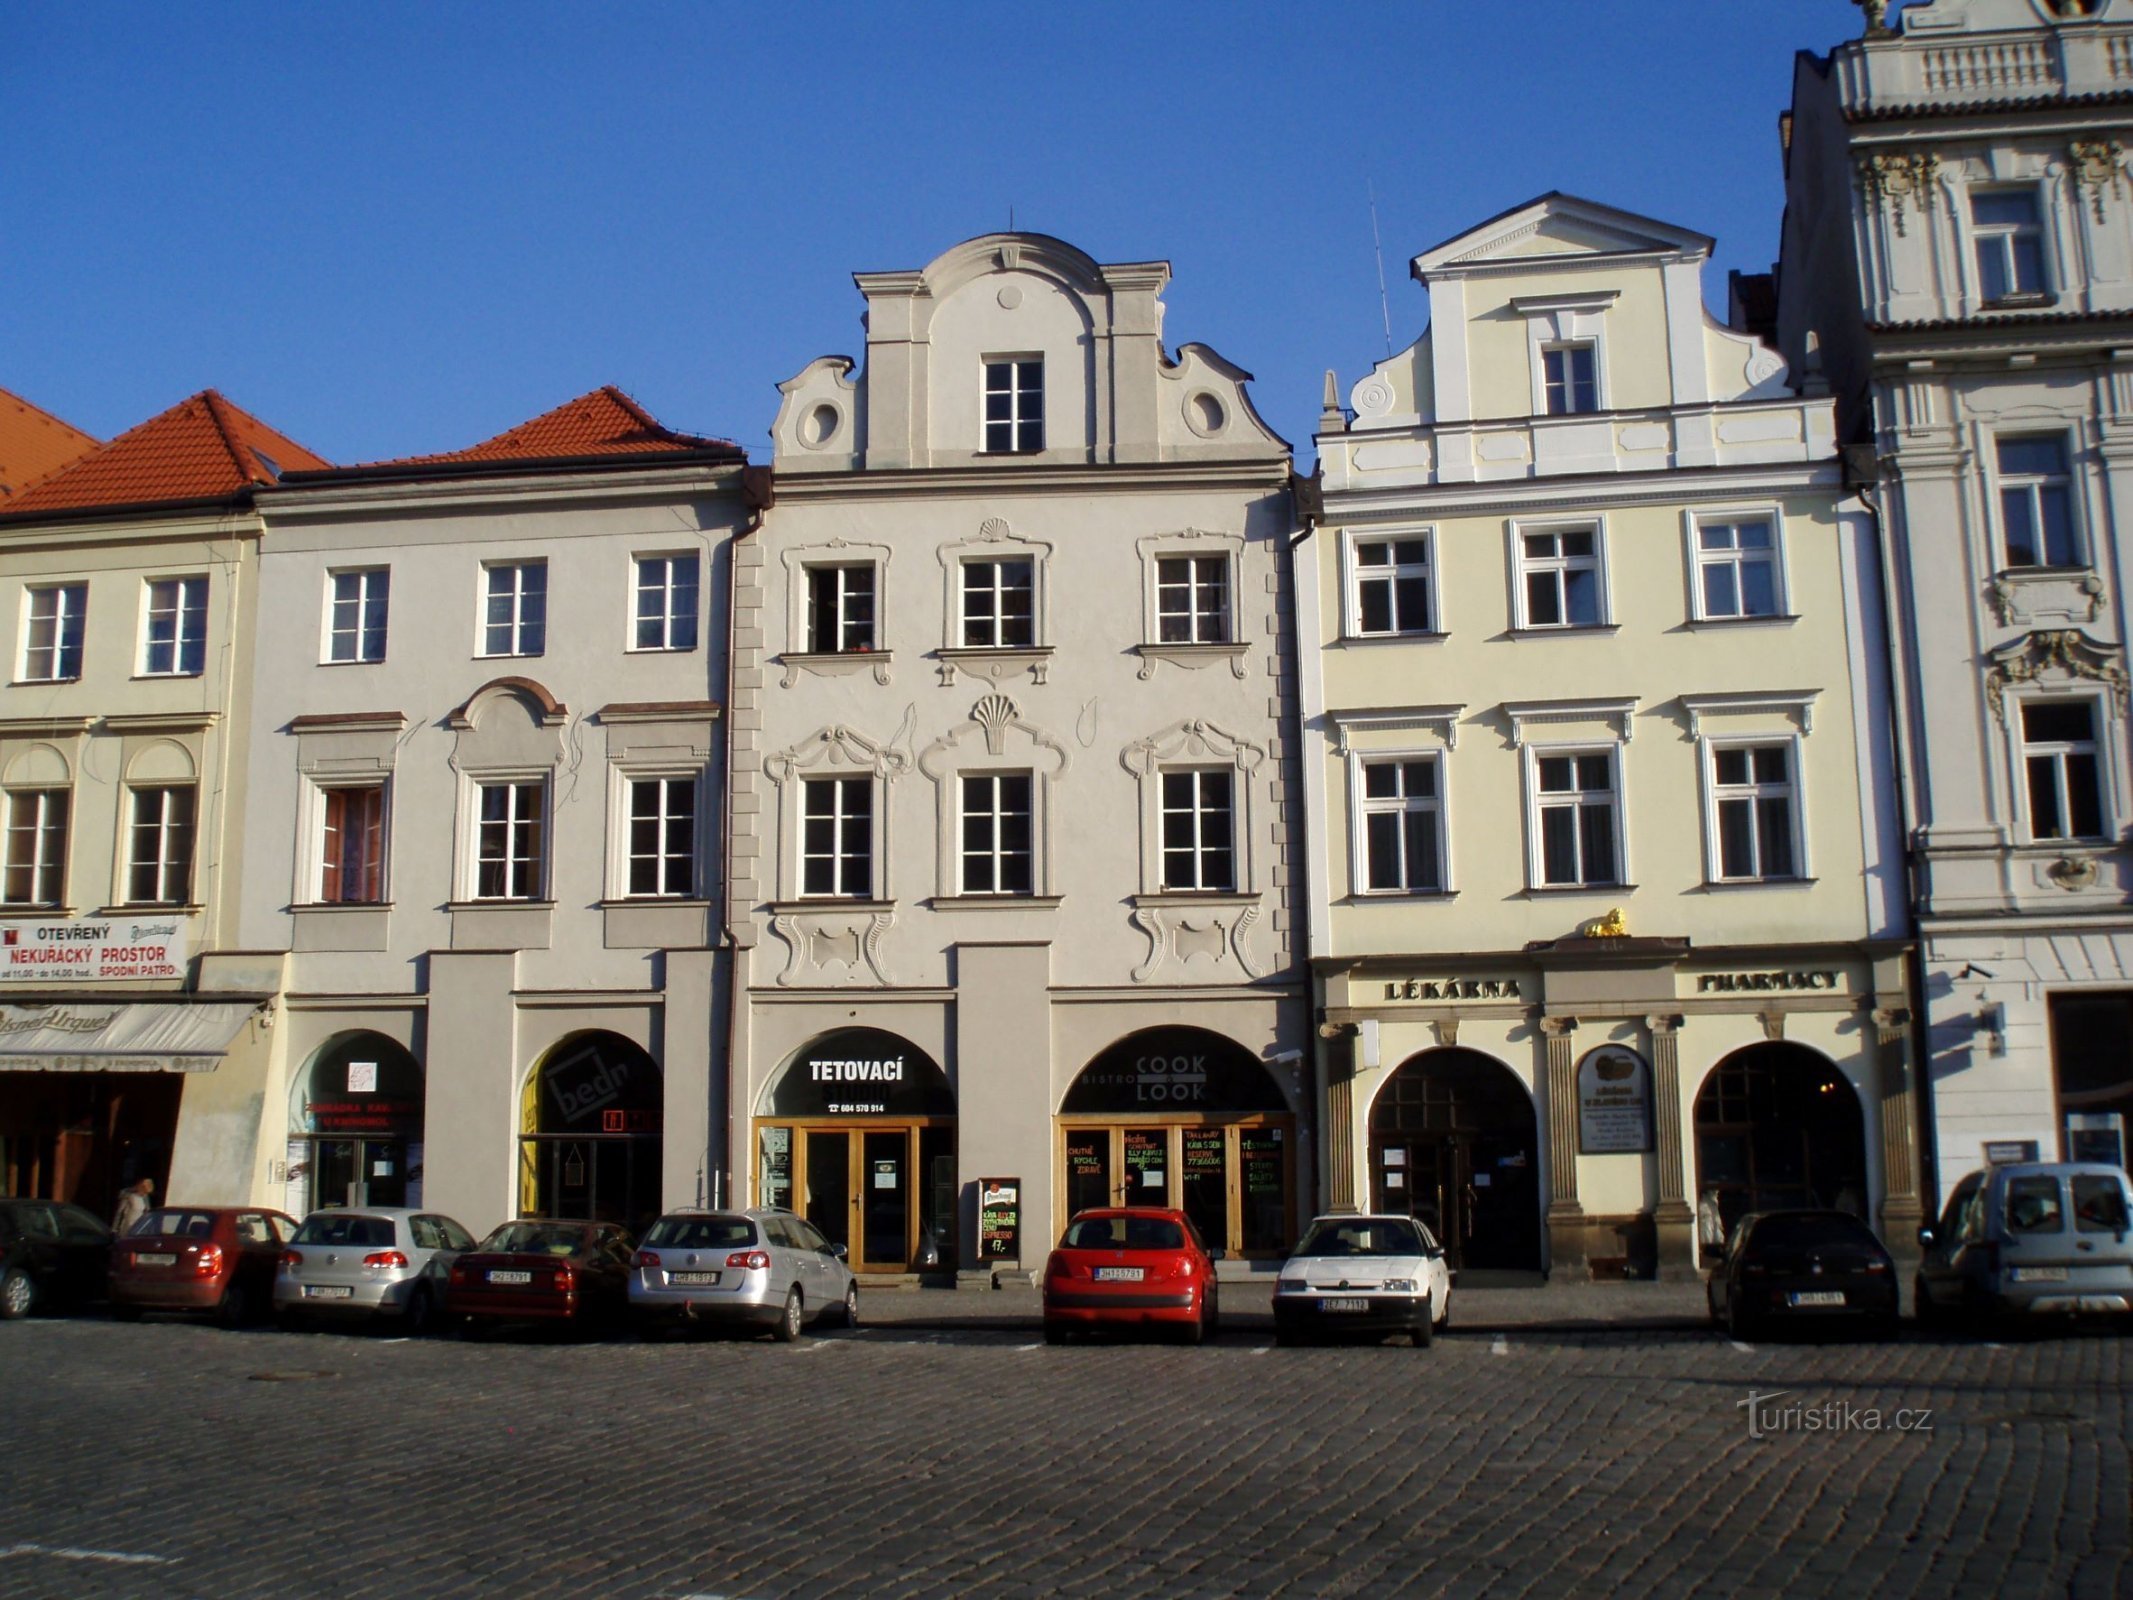 Velké náměstí nr. 27-29 (Hradec Králové, 9.4.2012. april XNUMX)